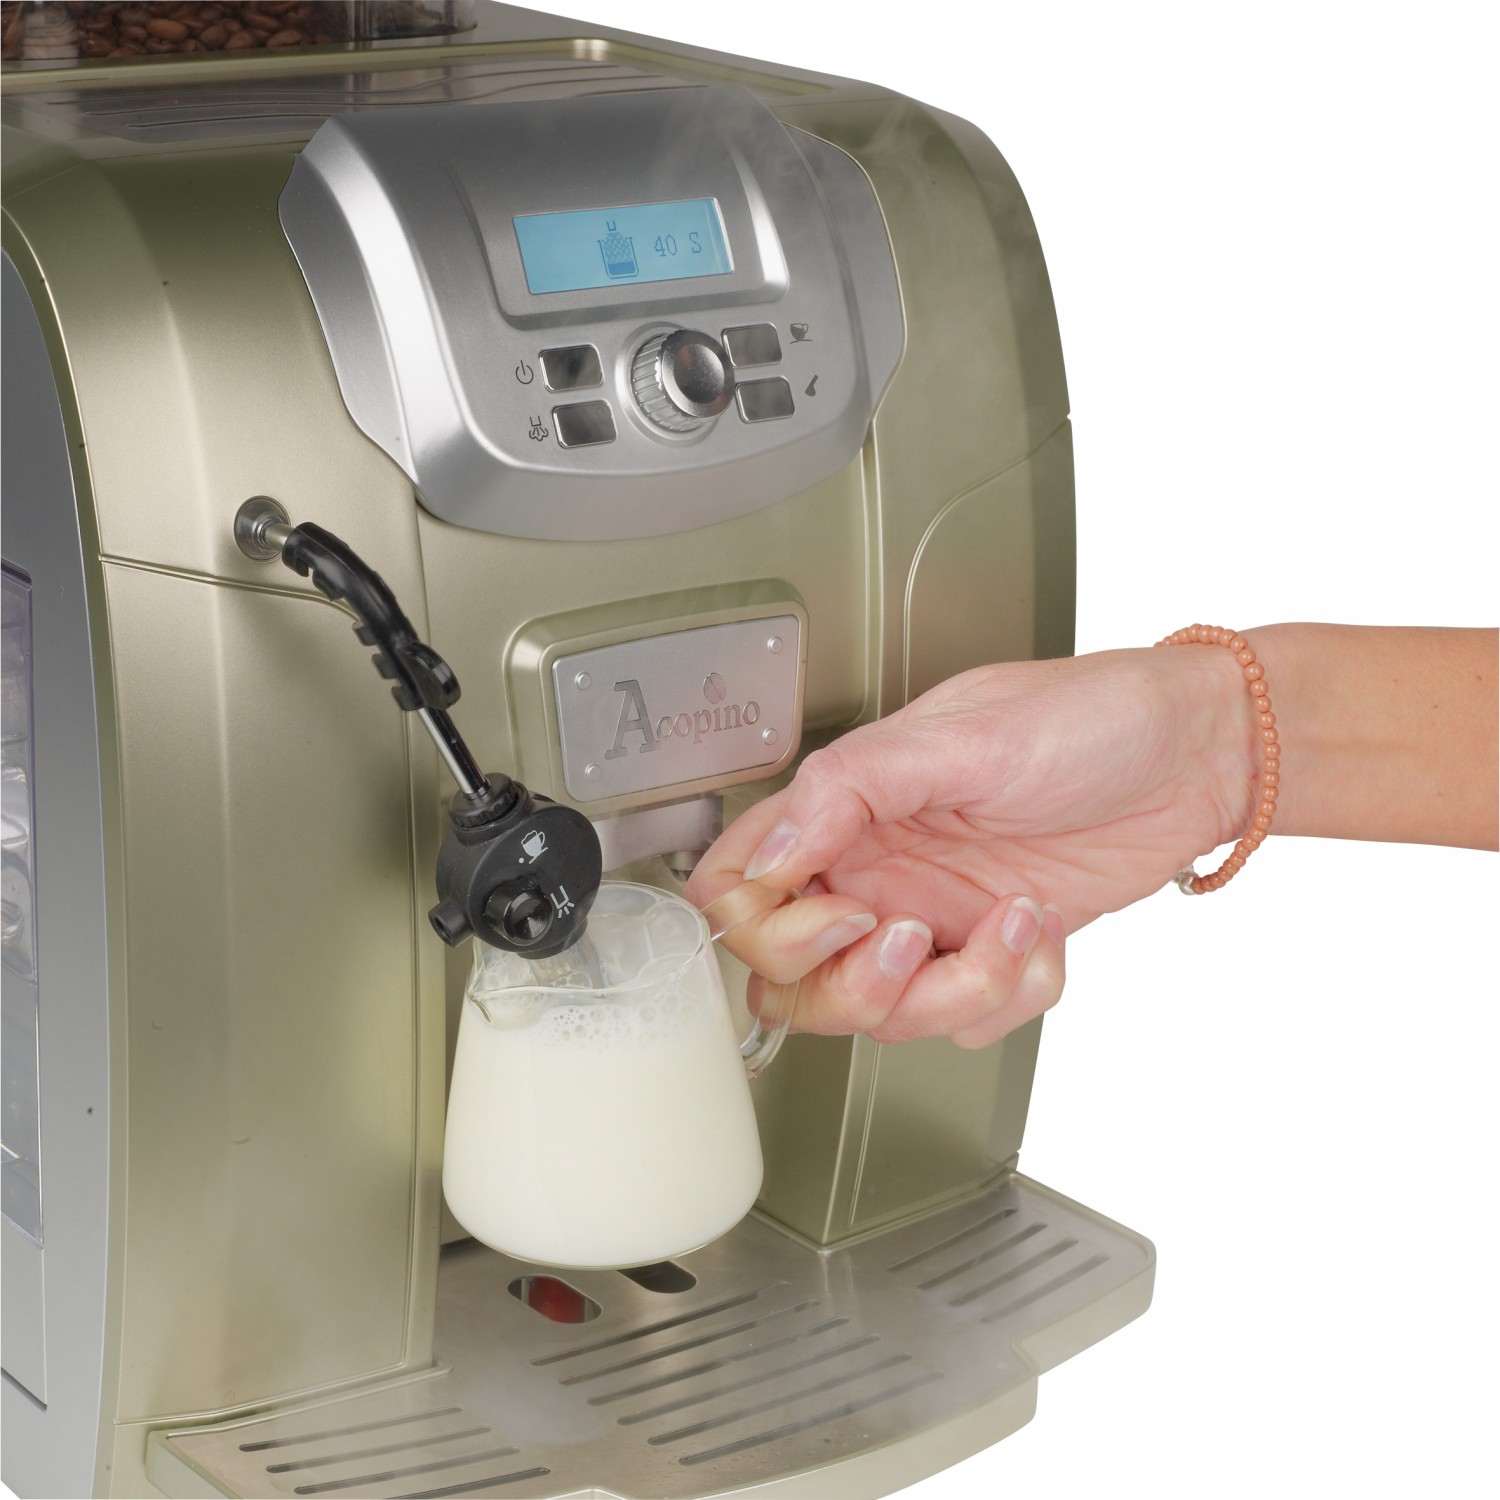 Kaffeevollautomat Acopino Ravenna im Test, Bild 2